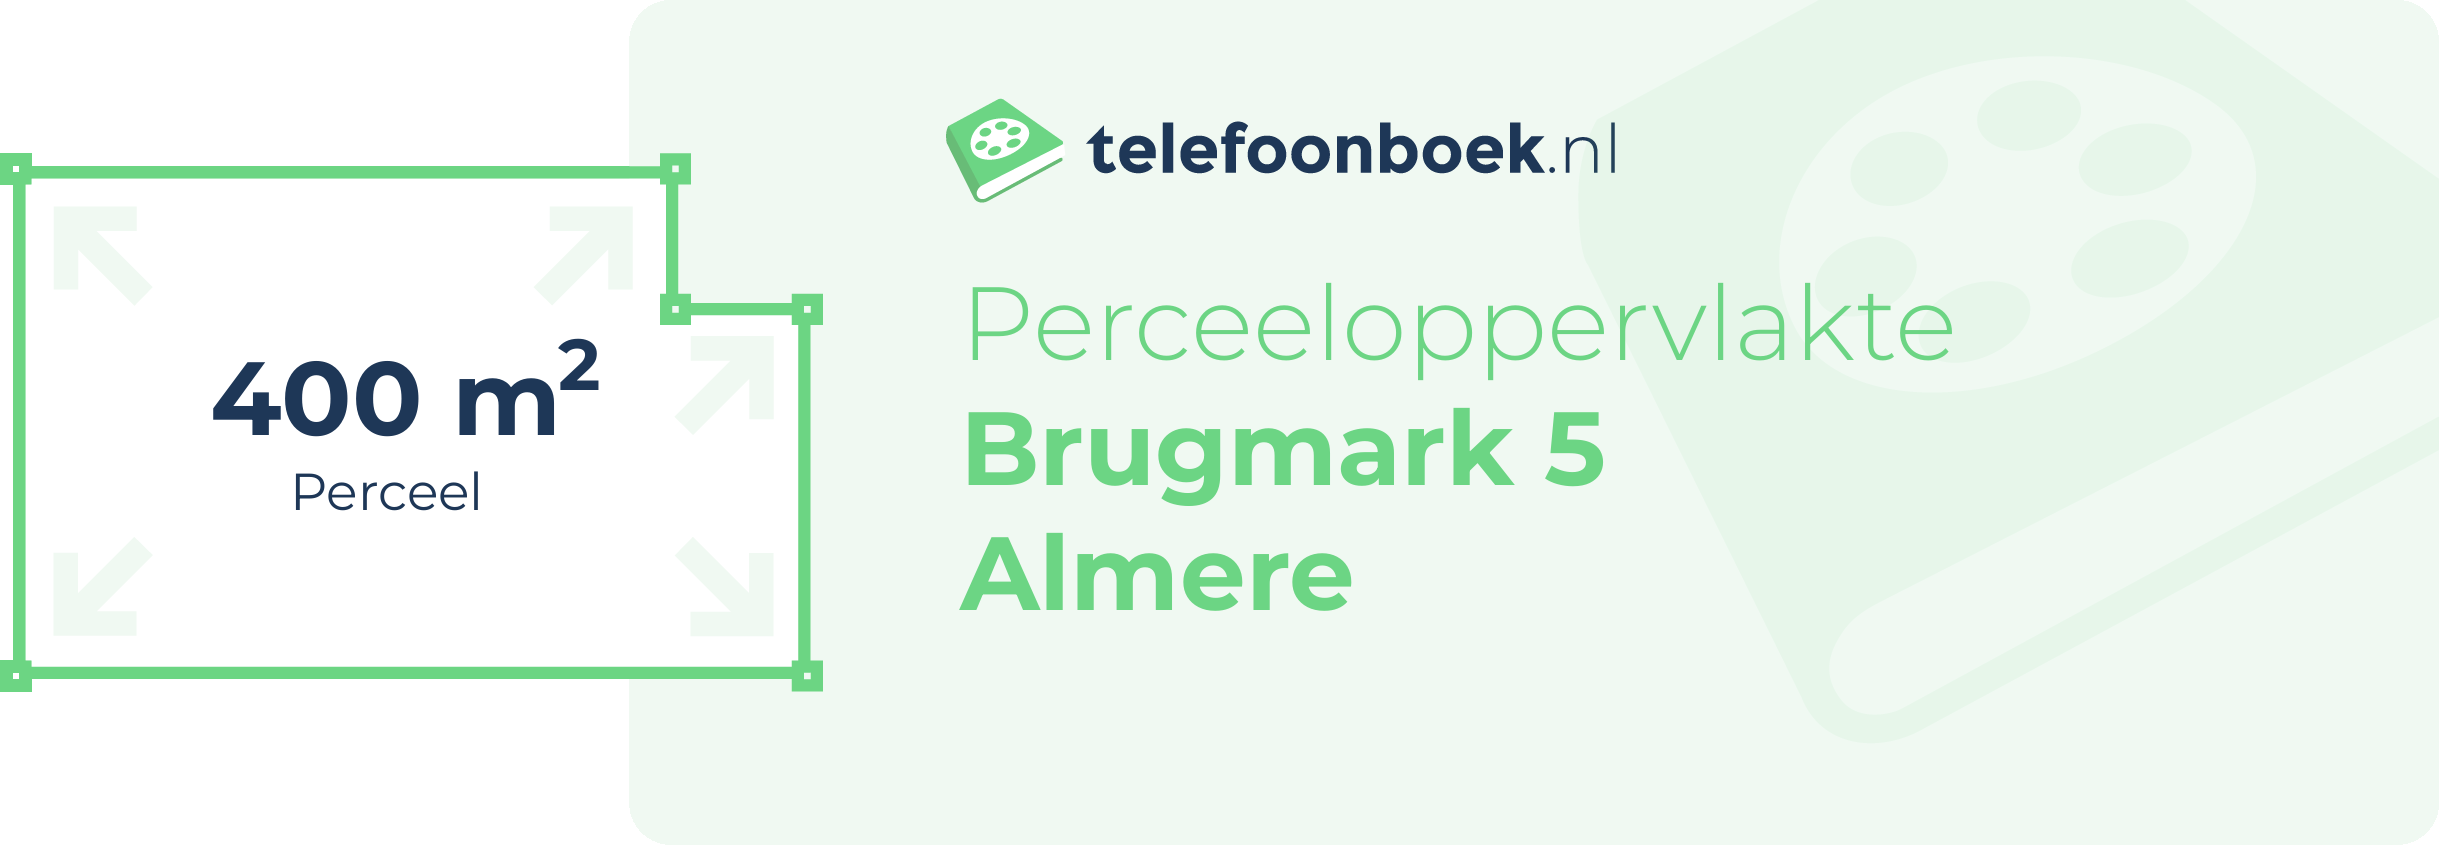 Perceeloppervlakte Brugmark 5 Almere